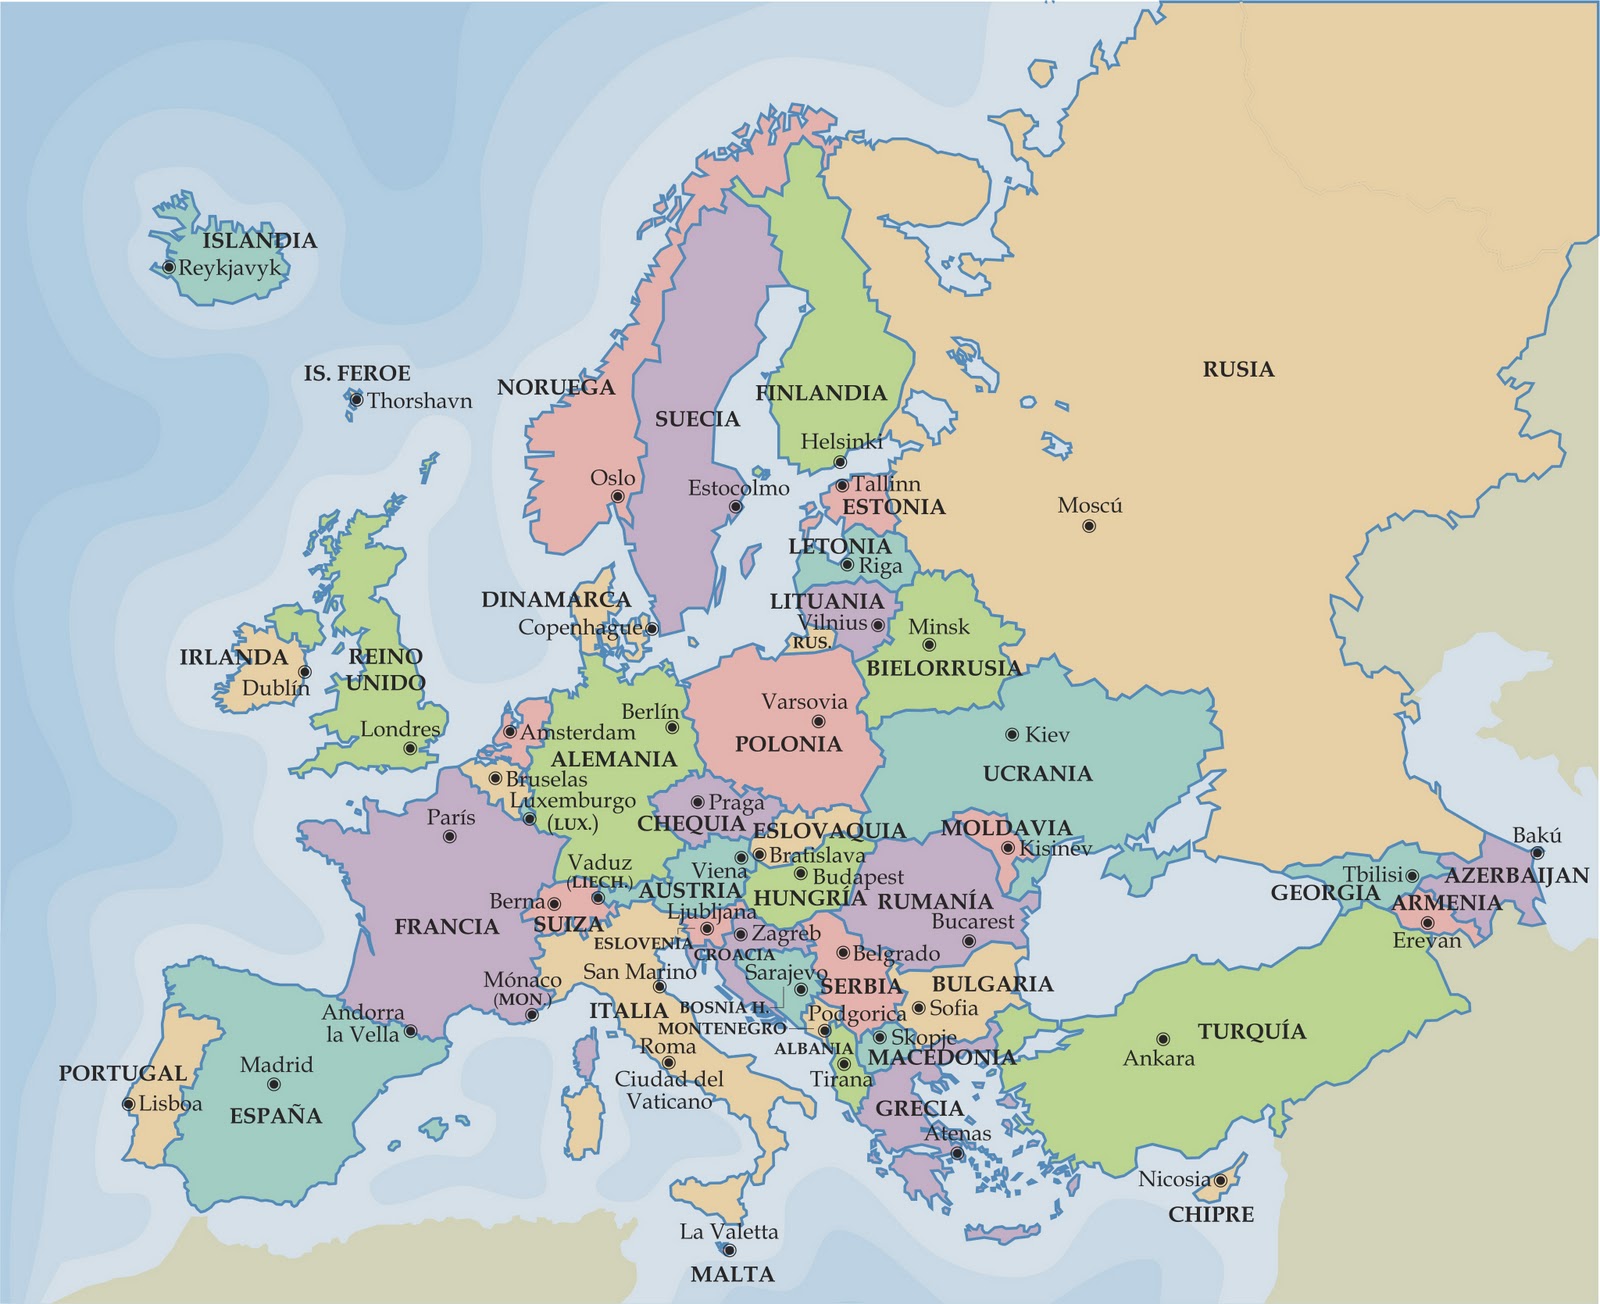 "SEXTO A" posee un blog: Geografía política de Europa. "COLOCA EN EL MAPA"